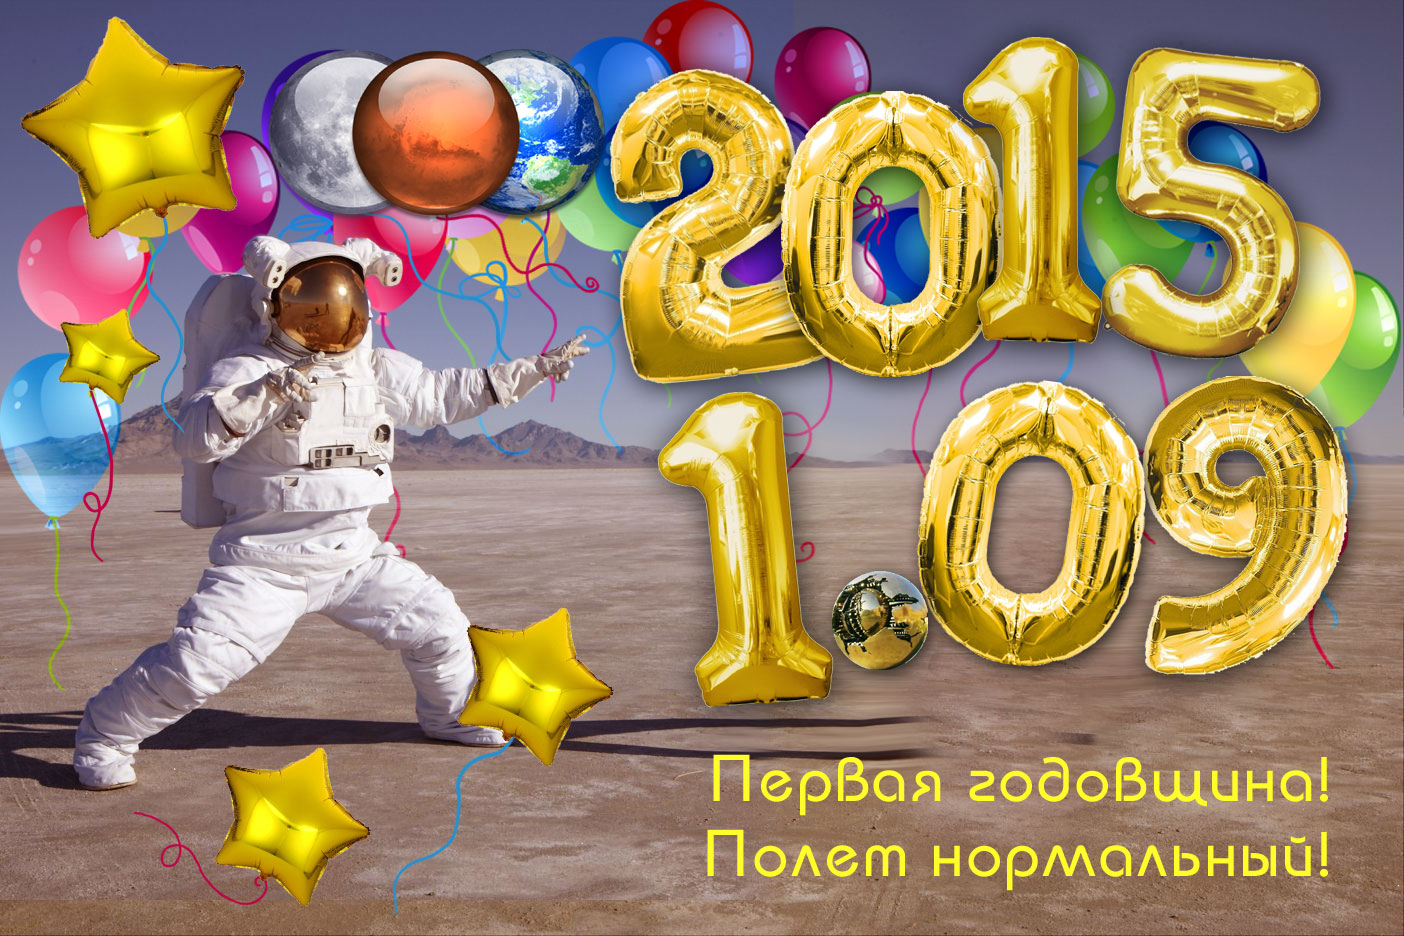 http://i69.fastpic.ru/big/2015/0831/d2/9cb4a8c980d4b576d54bc719e470d5d2.jpg